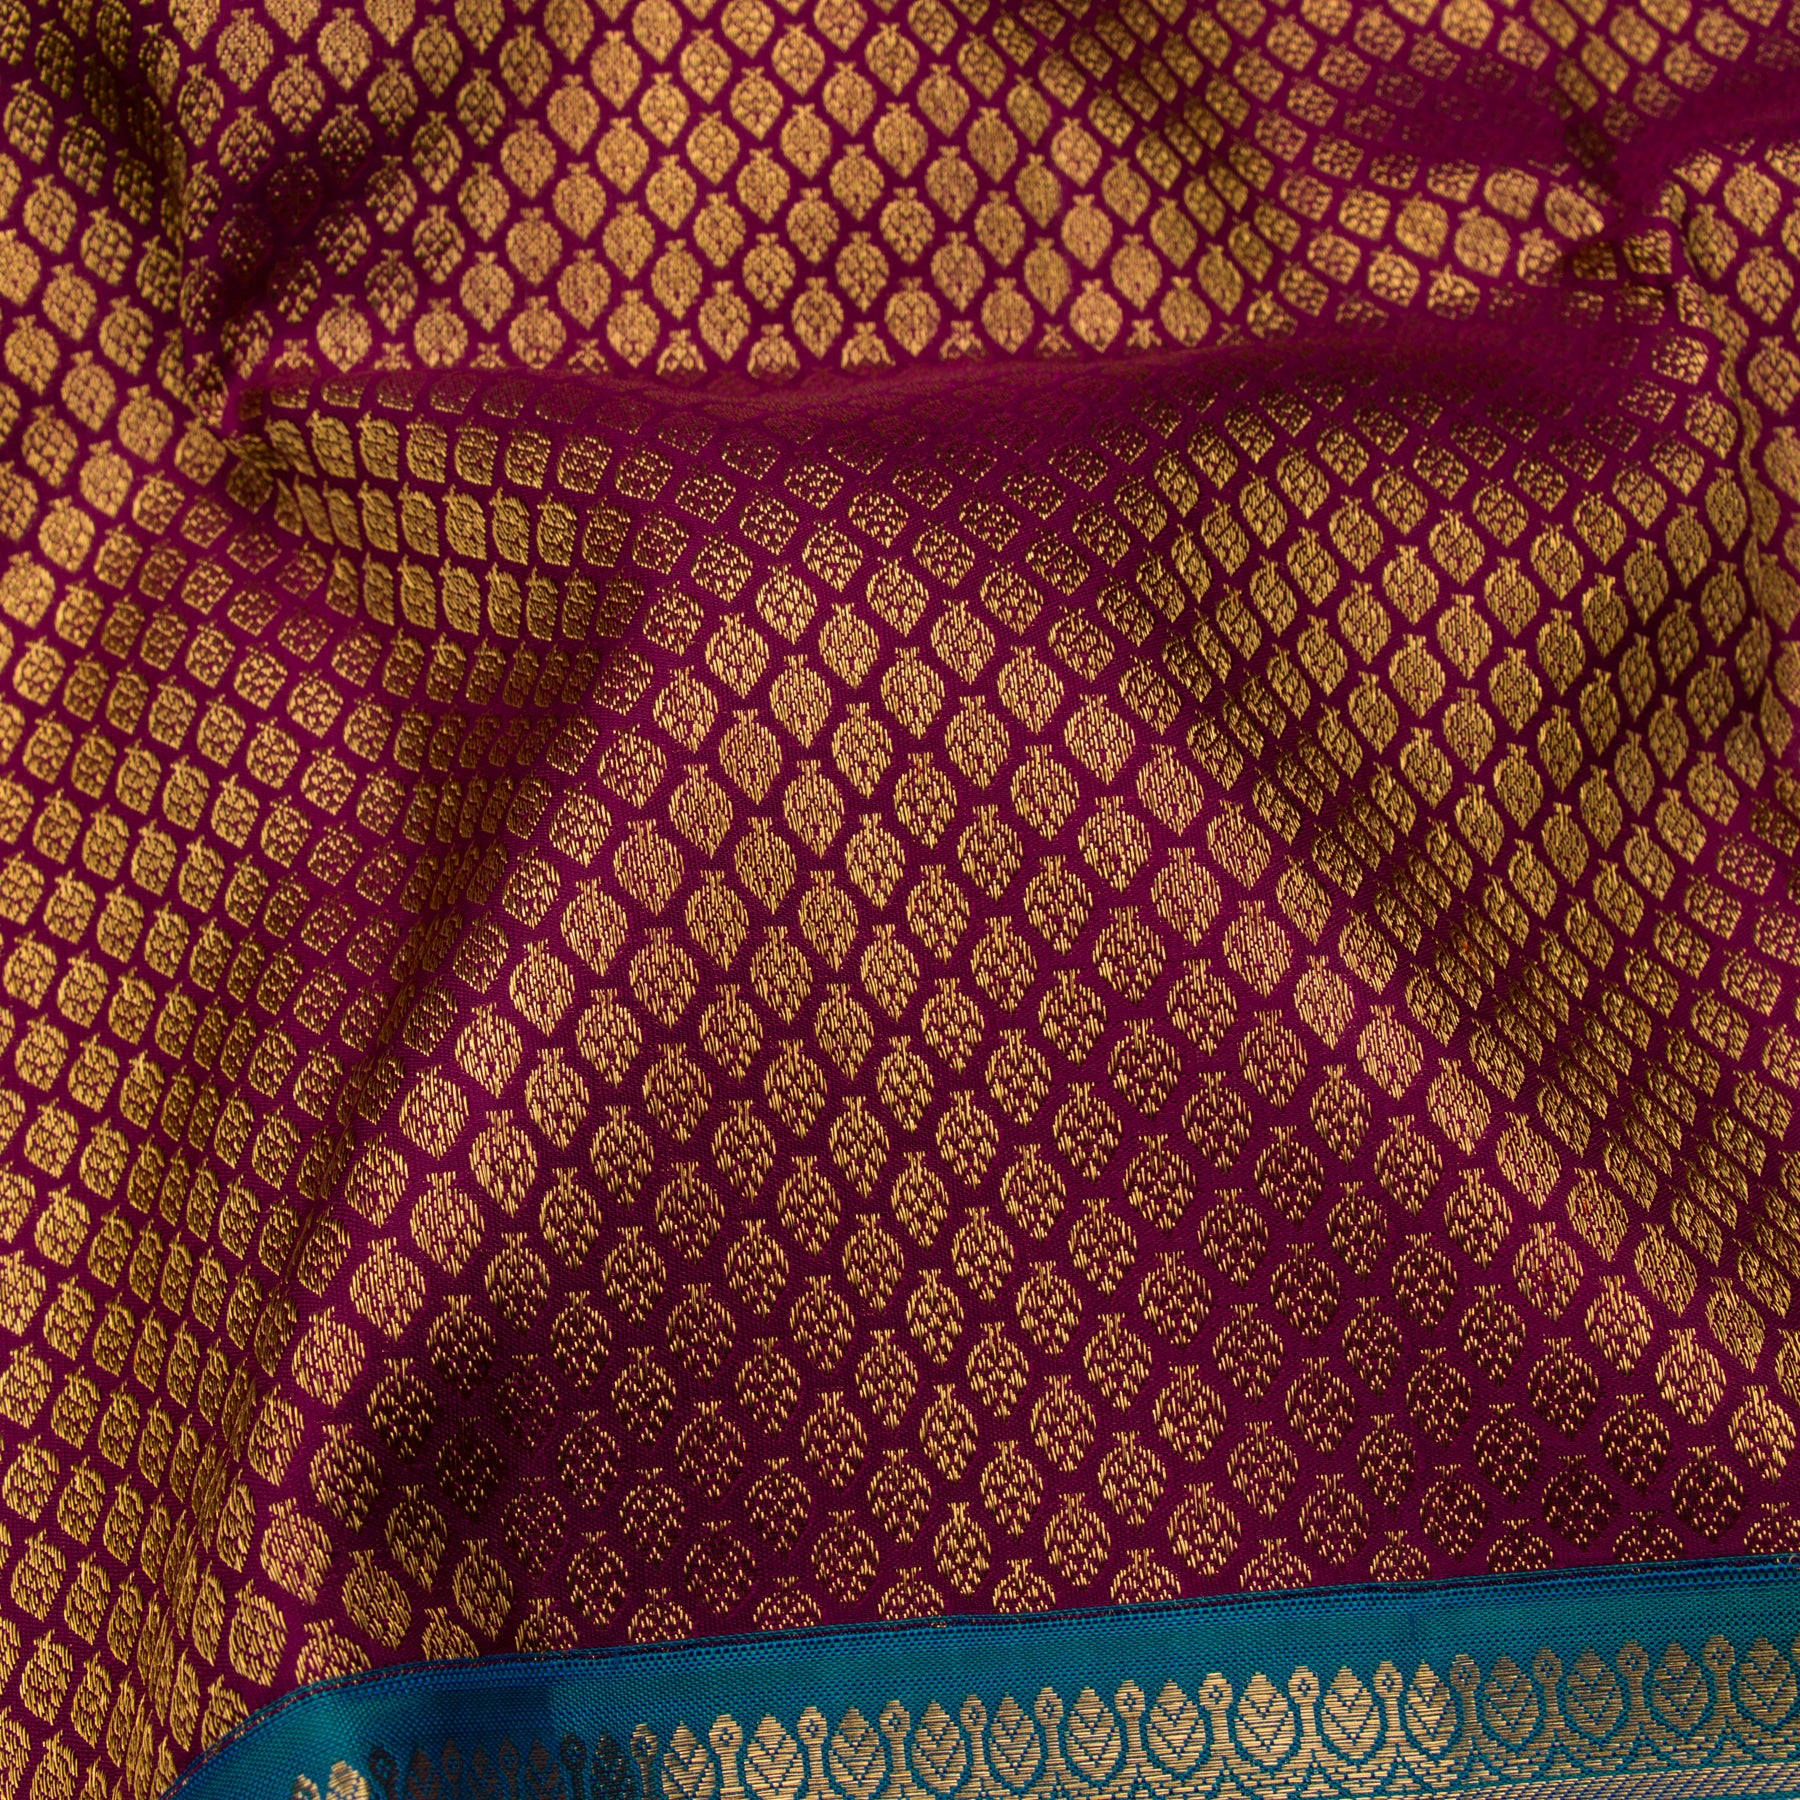 Kanakavalli Kanjivaram Silk Sari 22-110-HS001-12475 - Fabric View